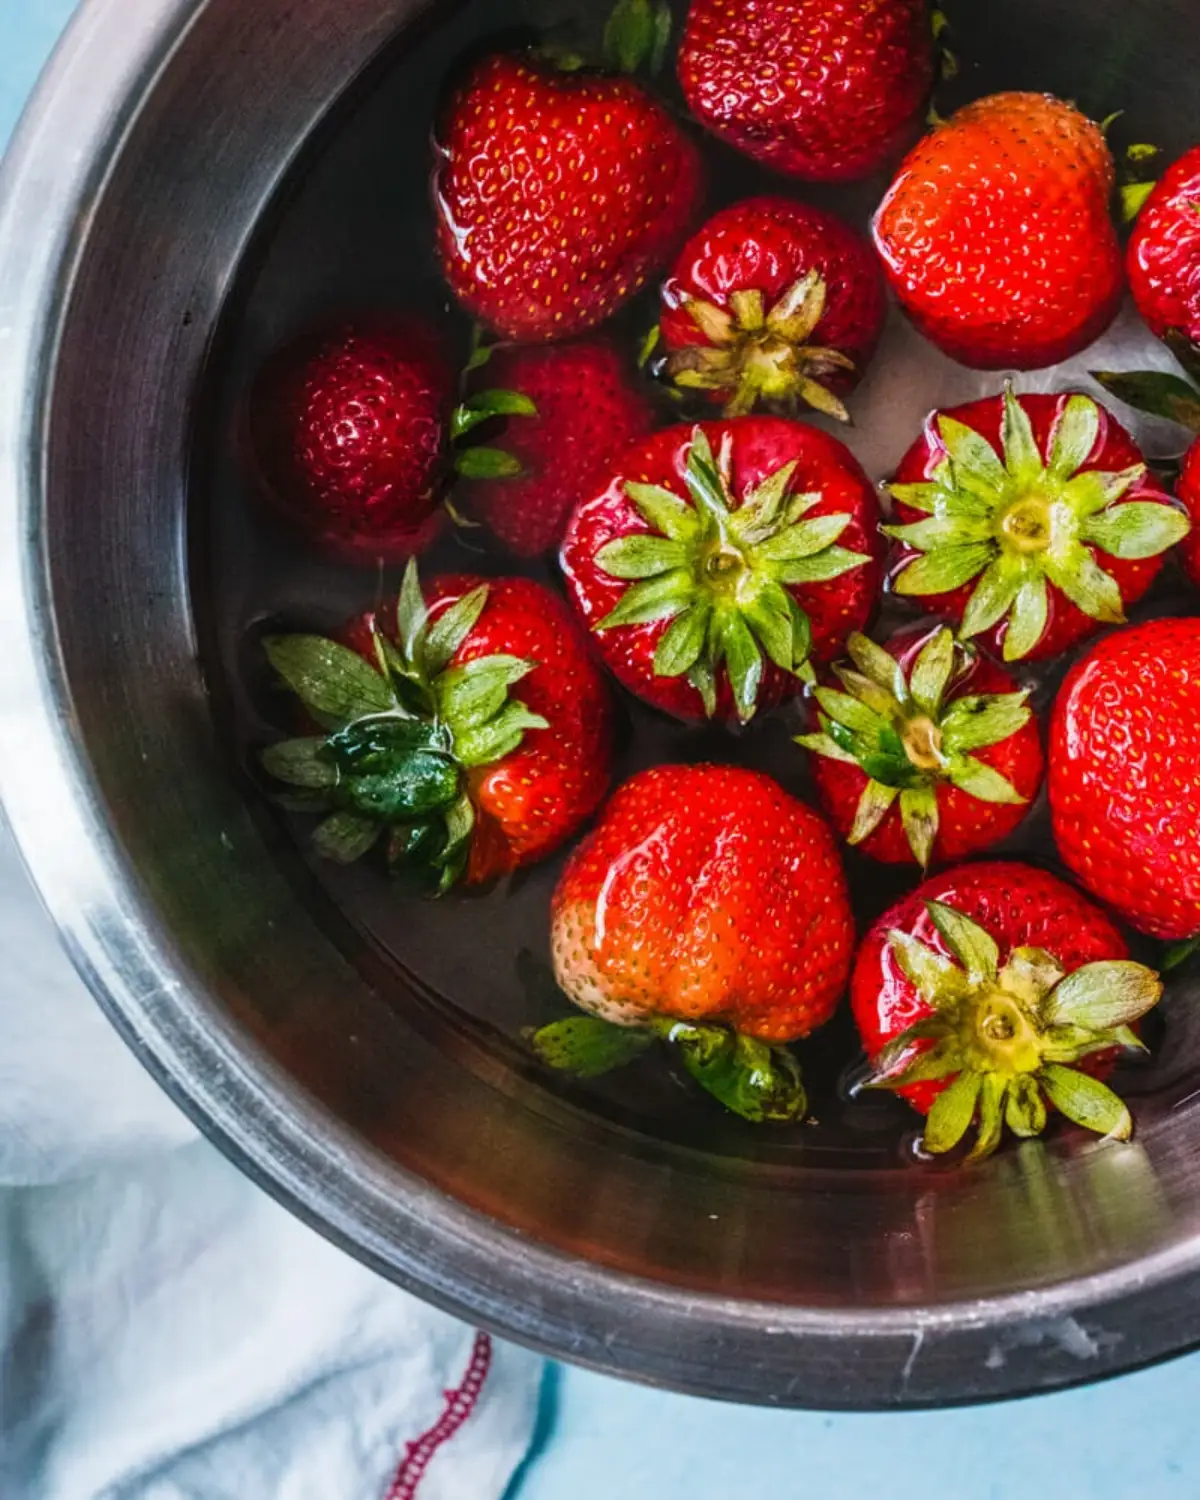 erdbeeren gewaschen aufbewahren erdbeeren in essig waschen